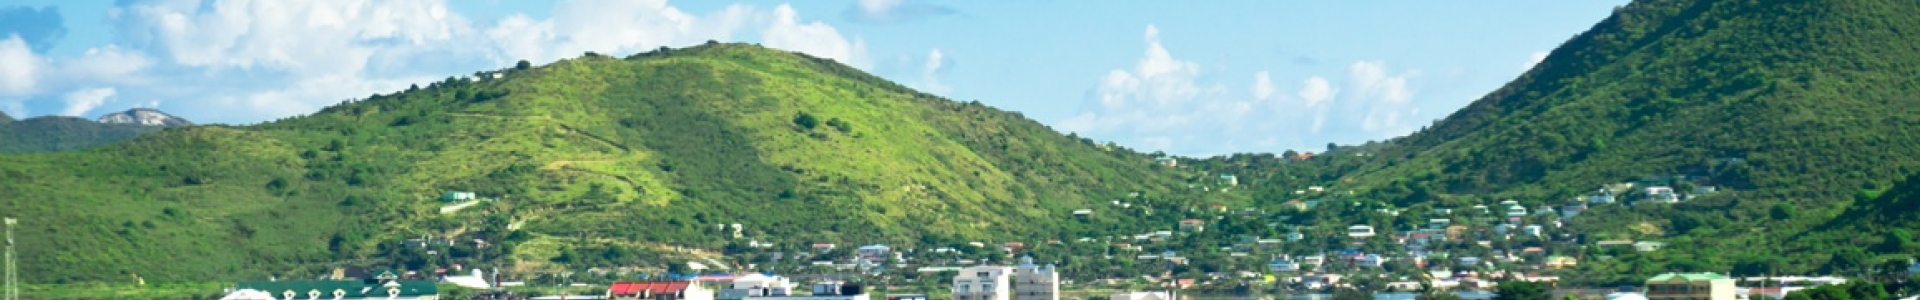 Les îles Grenadines